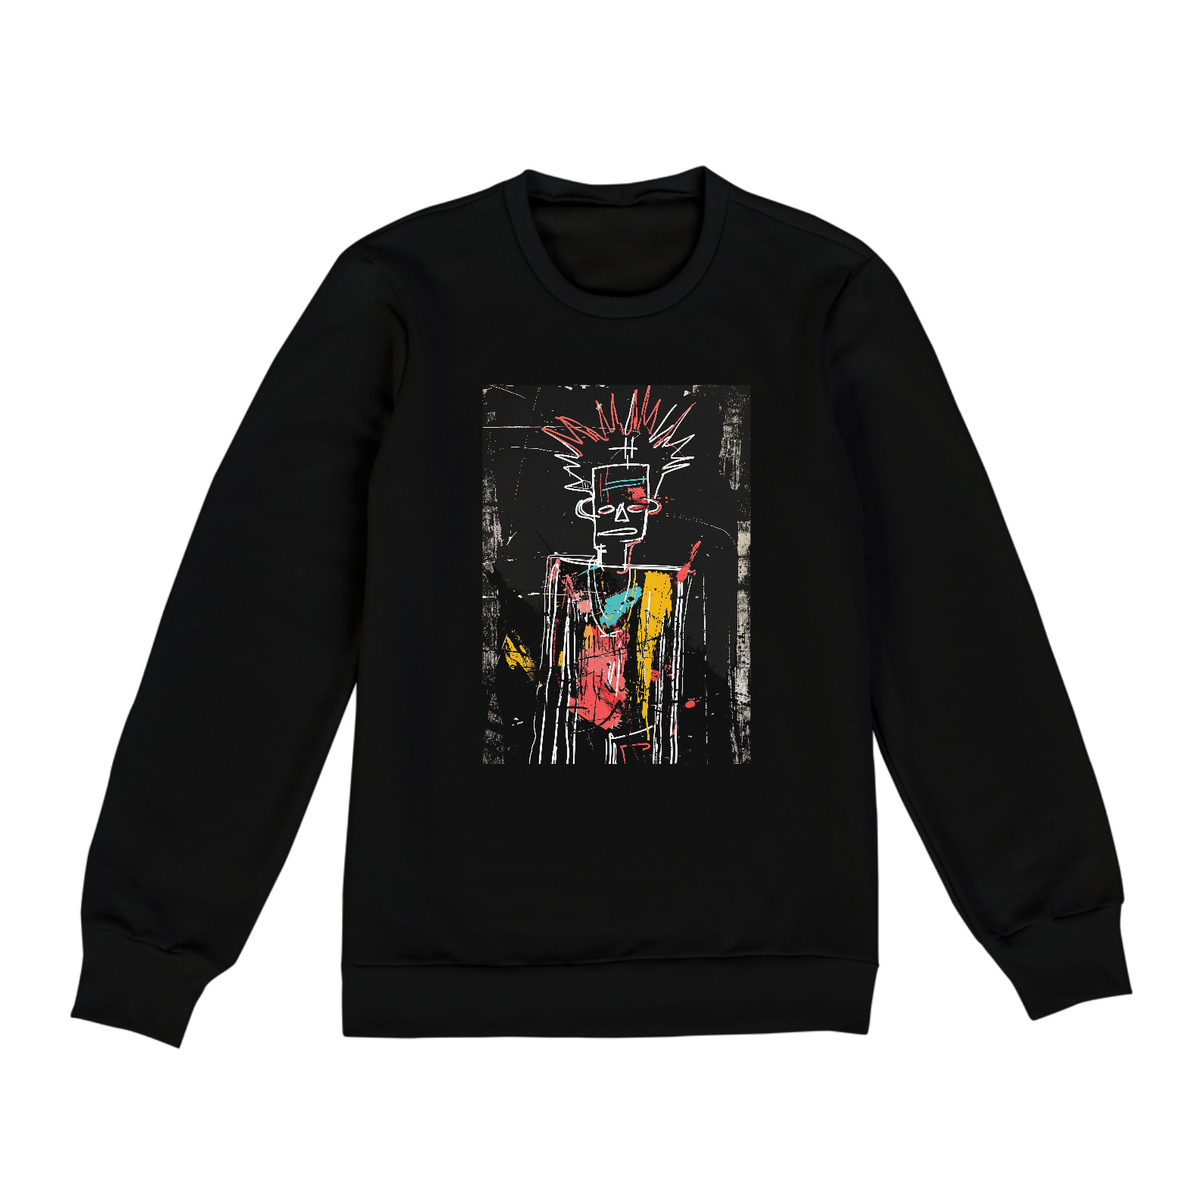 Nome do produto: Untitled/Estilo Jean-Michel Basquiat